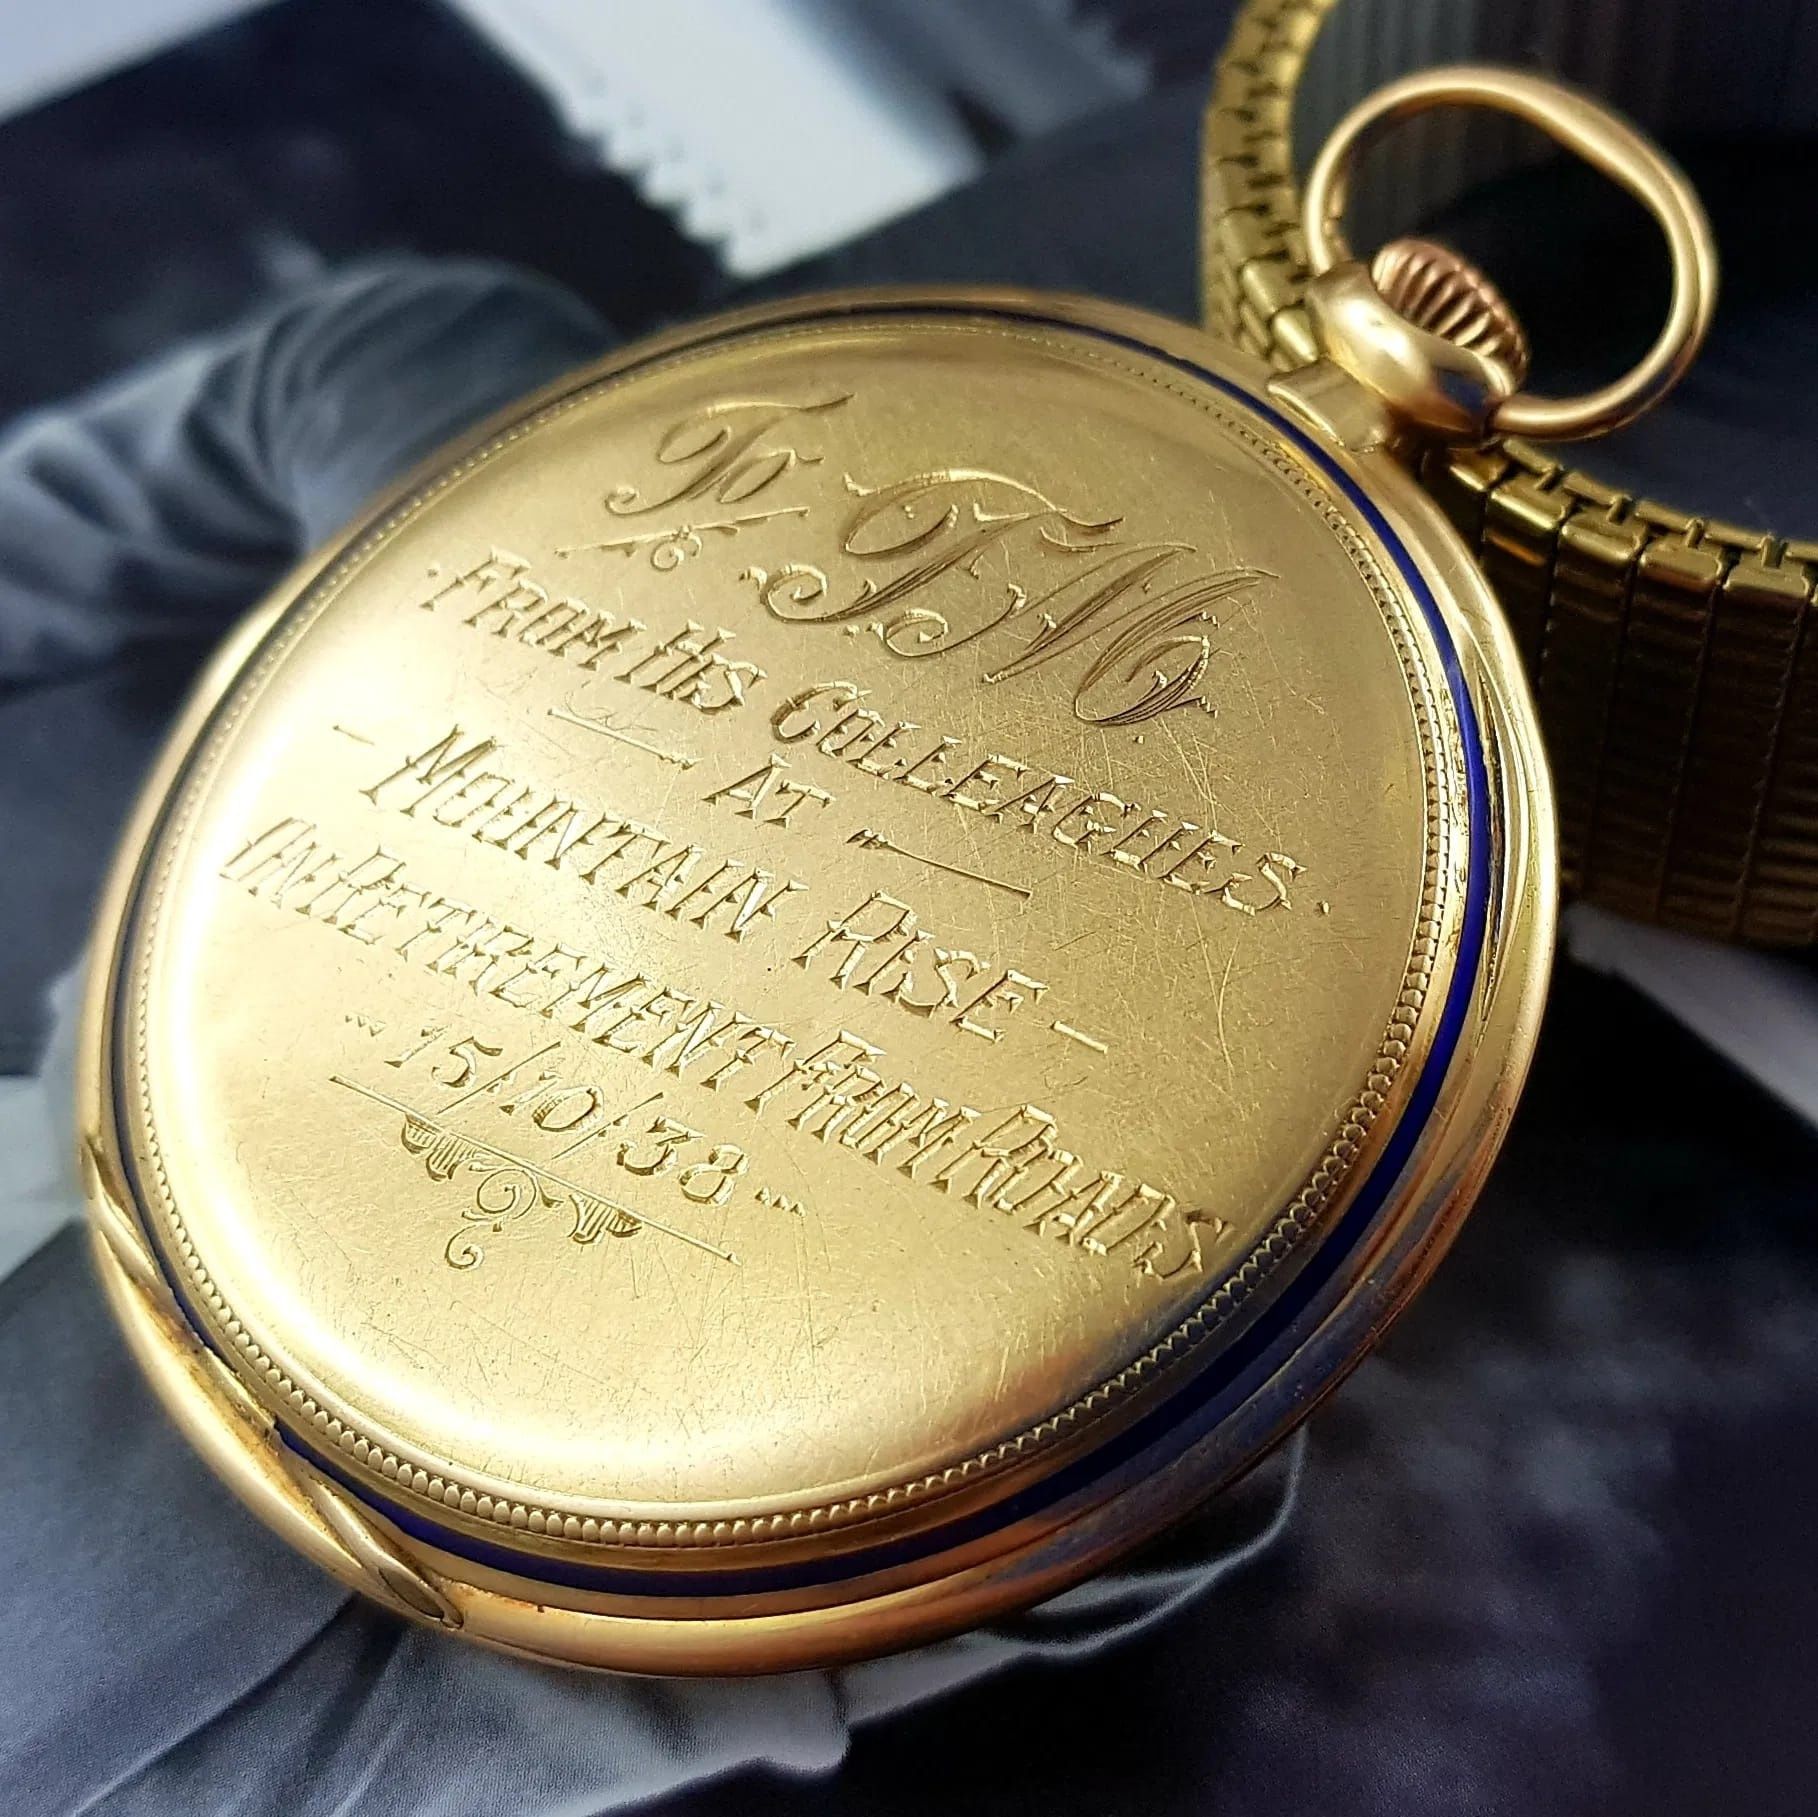 Zegarek kieszonkowy Eberhard złoto 14k , unikat  ultra slim Chronometr